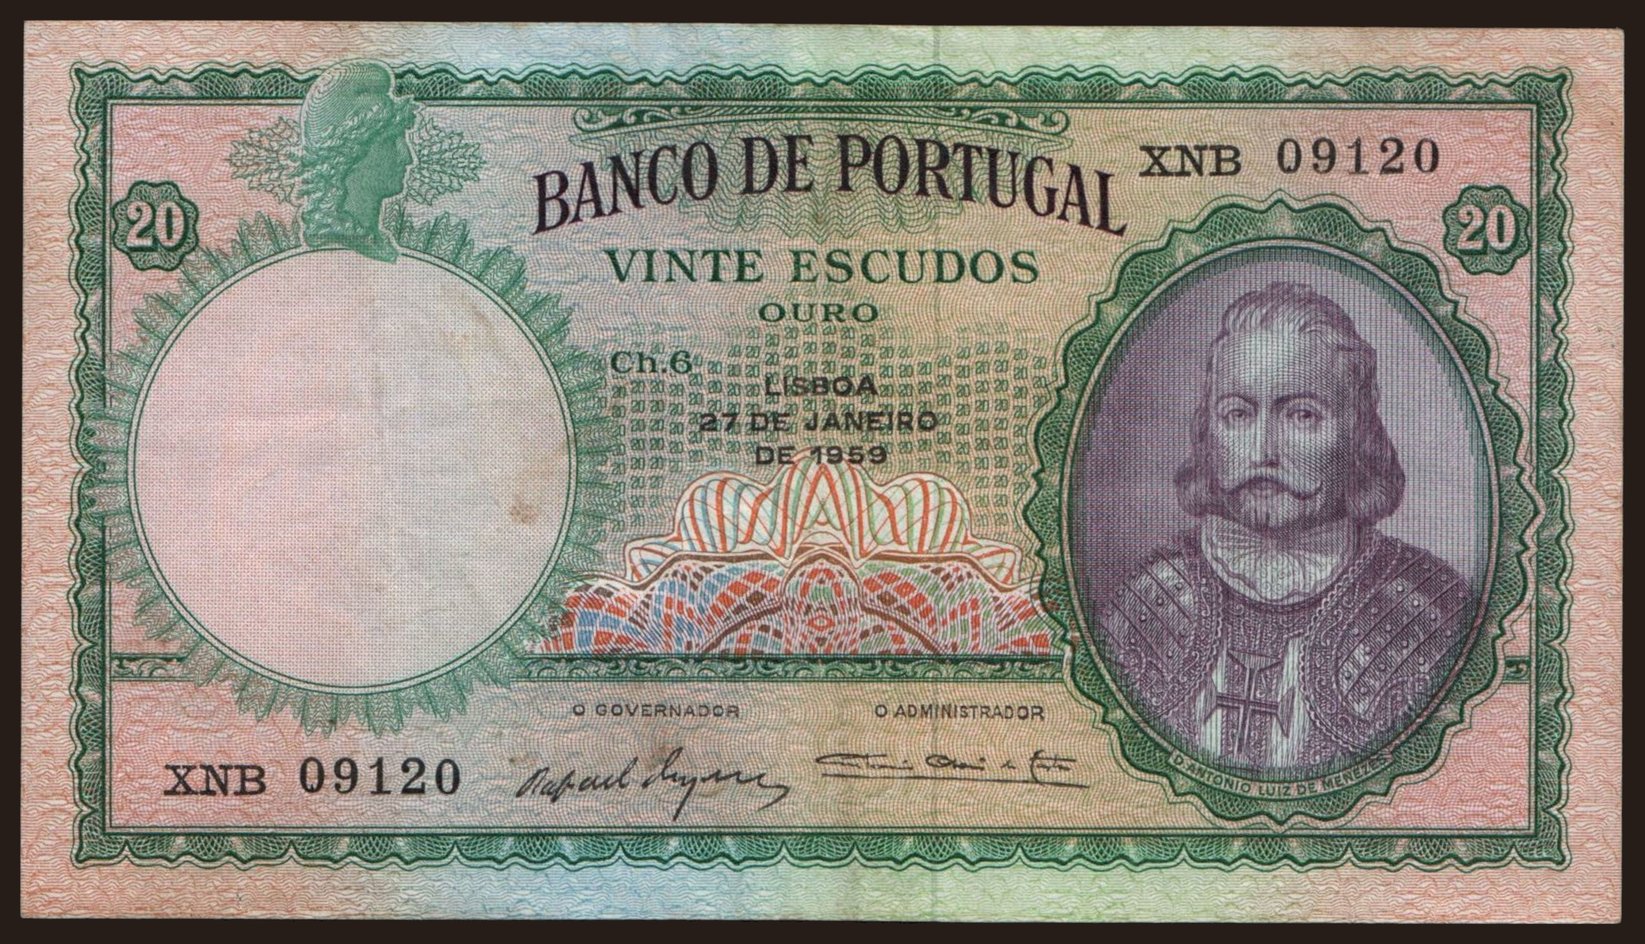 20 escudos, 1959